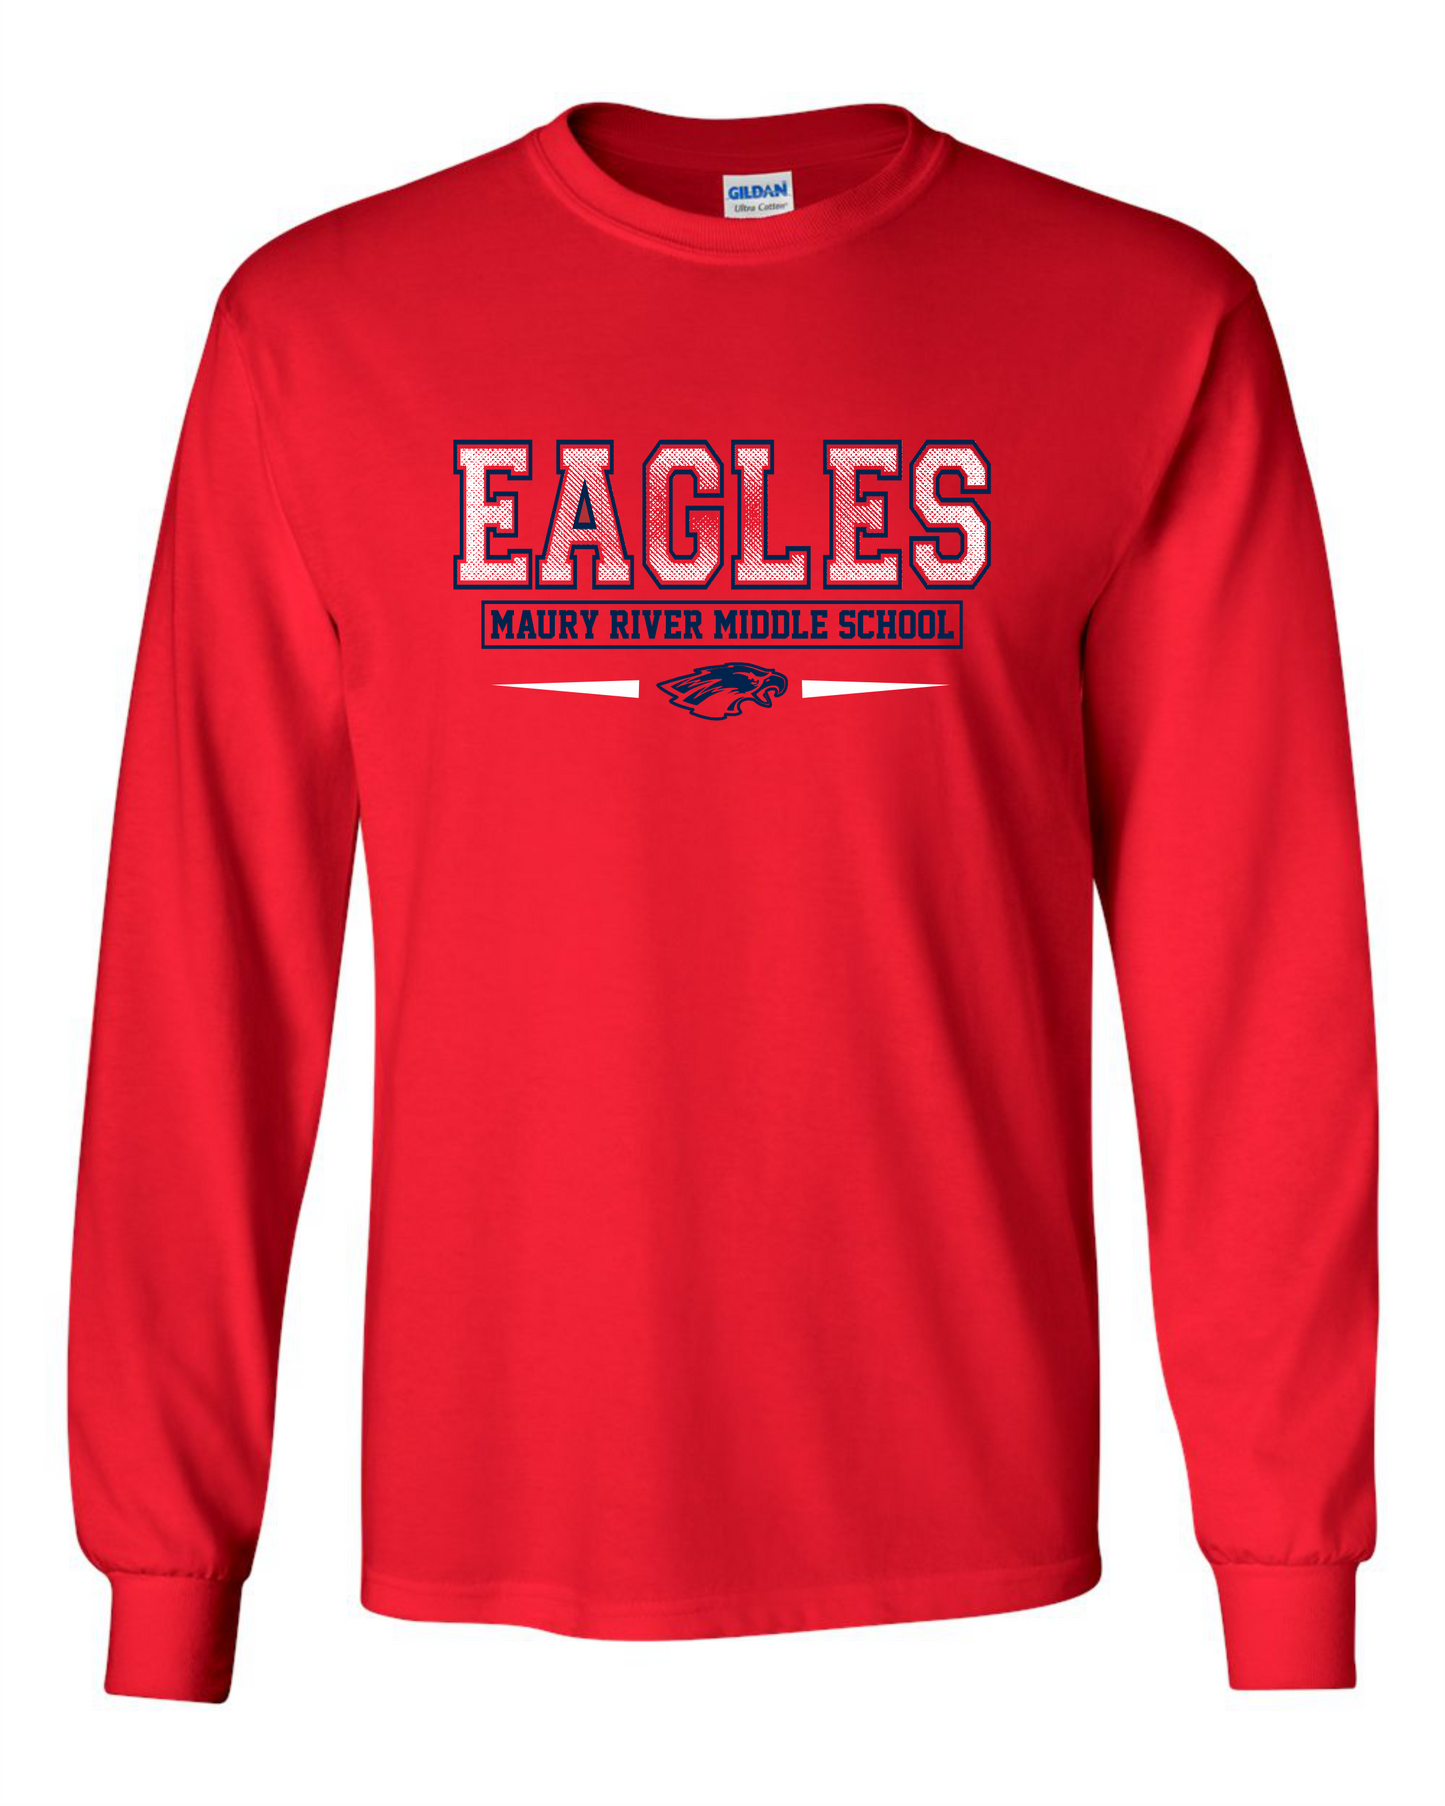 MRMS Eagle Long Sleeve T-Shirt